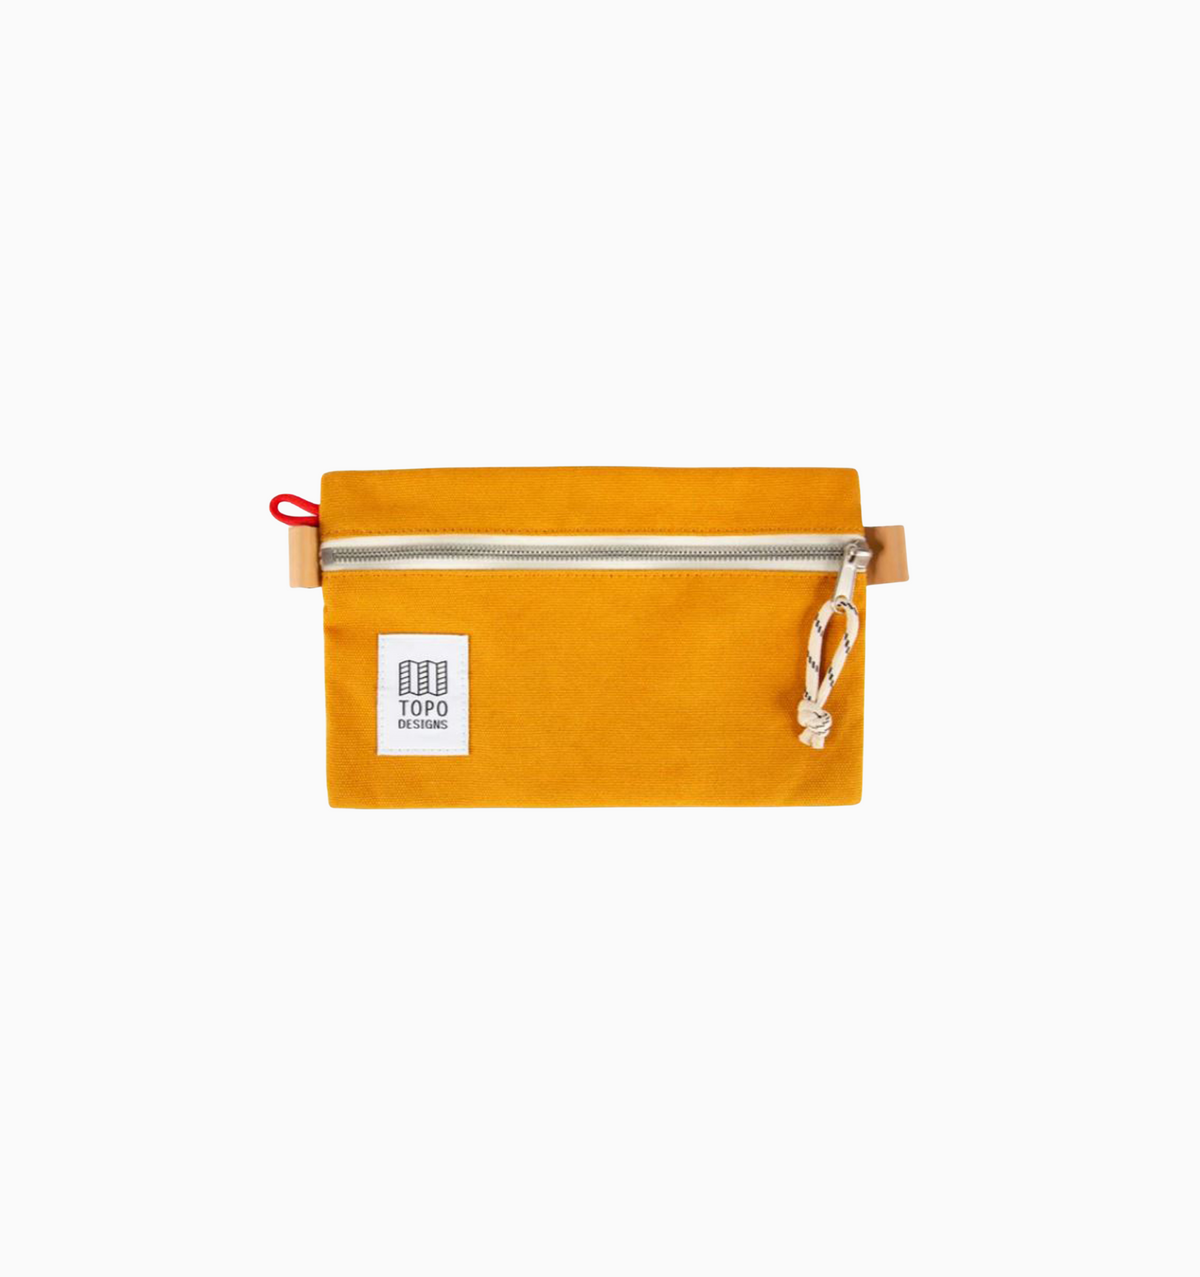 Topo Designs Small Accessory Bag - Yellow Canvas